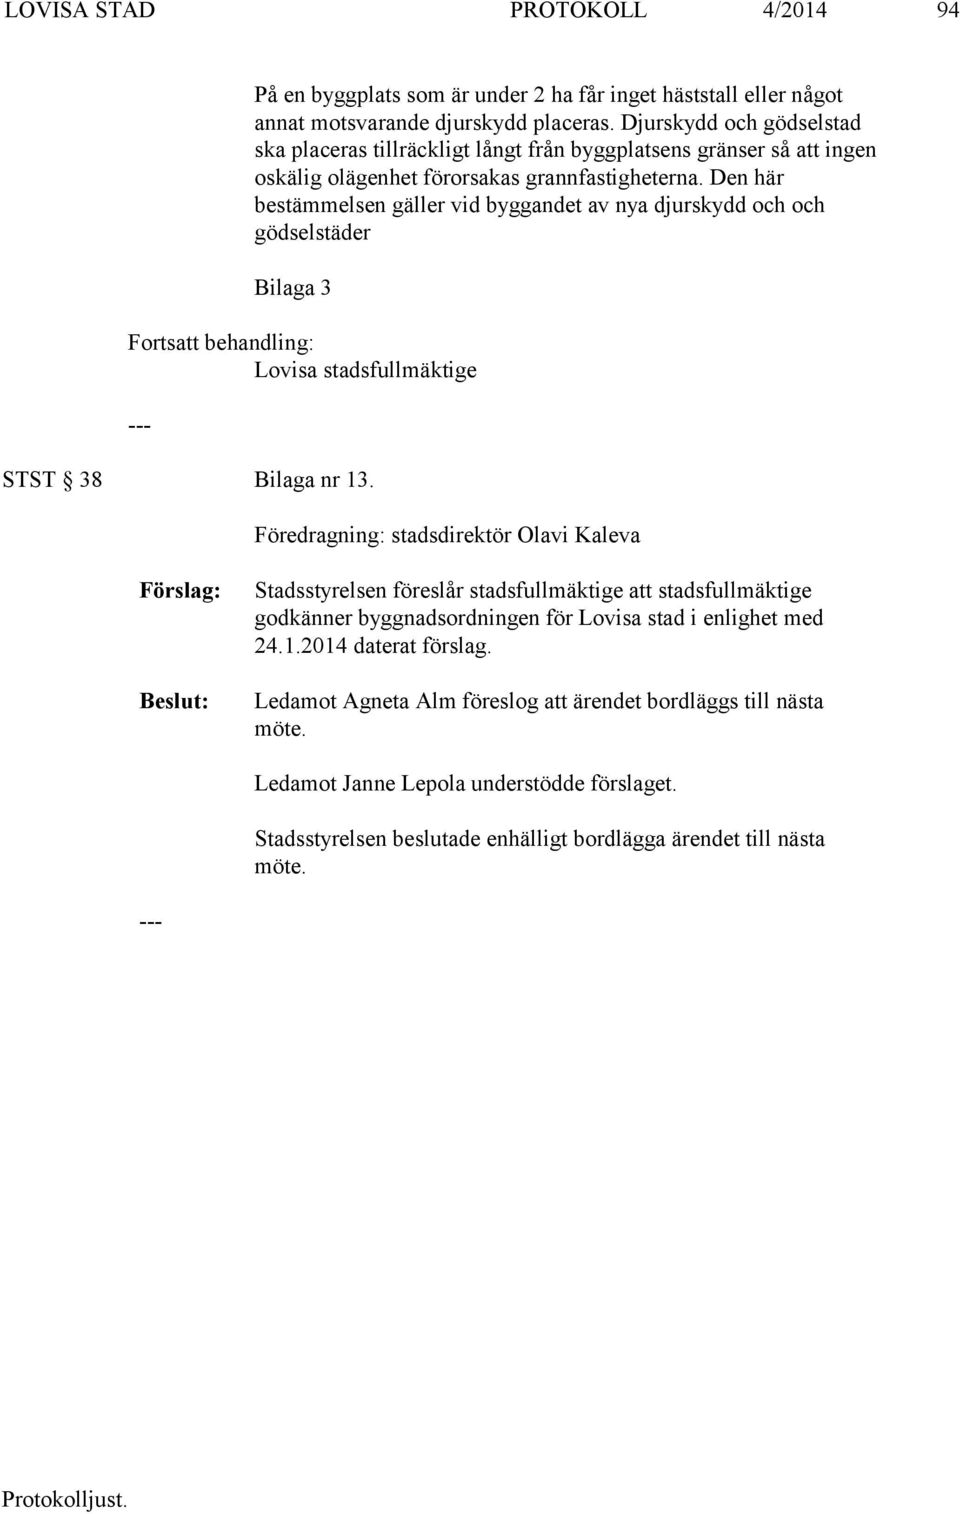 Den här bestämmelsen gäller vid byggandet av nya djurskydd och och gödselstäder Bilaga 3 Fortsatt behandling: Lovisa stadsfullmäktige STST 38 Bilaga nr 13.